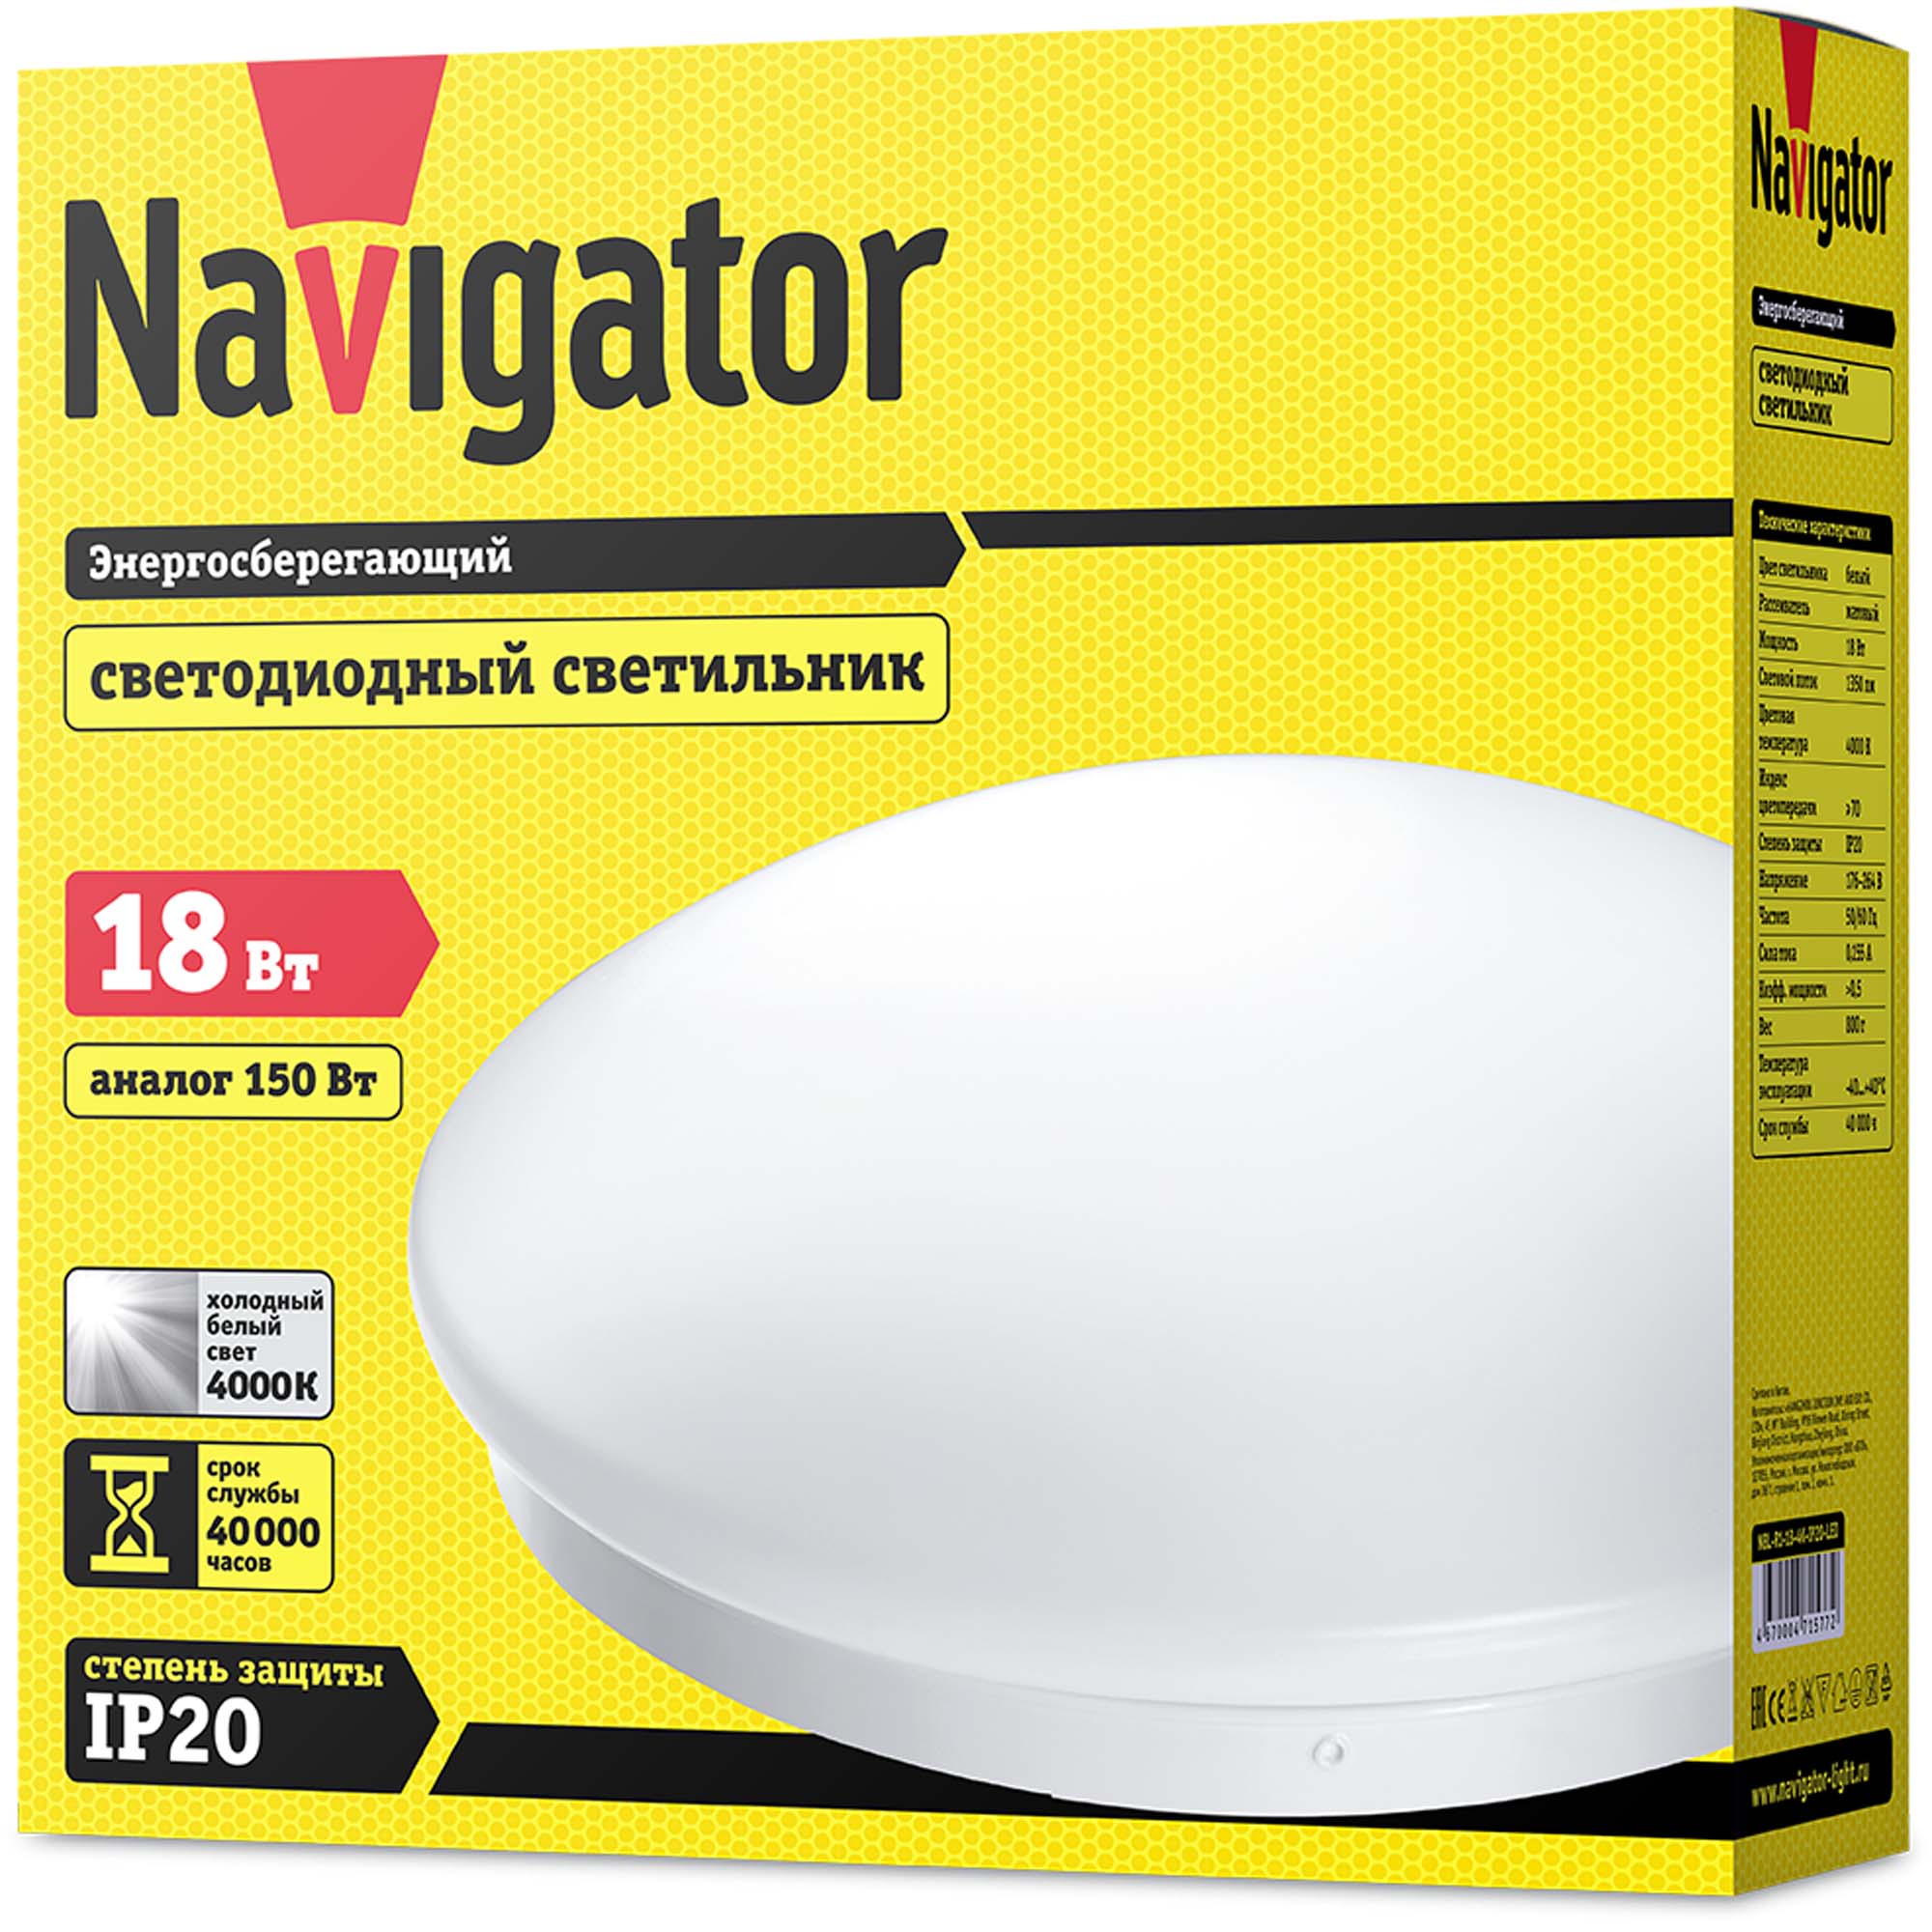 Светильник Navigator nbl-r1-18-4k-ip20-led, цвет 4000 к - фото 3